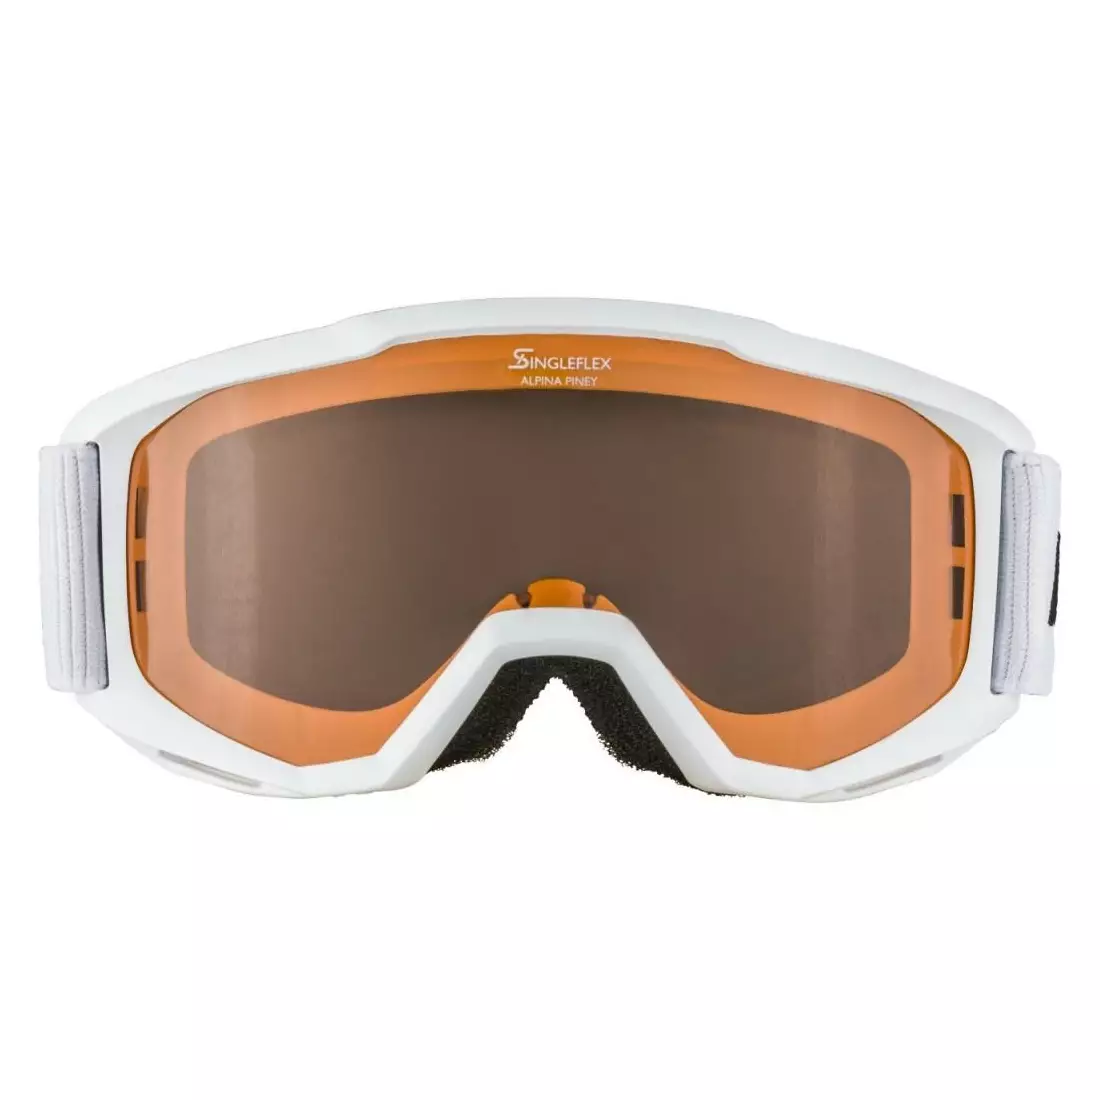 Ski / snowboard goggles ALPINA JUNIOR PINEY WHITE A7268411